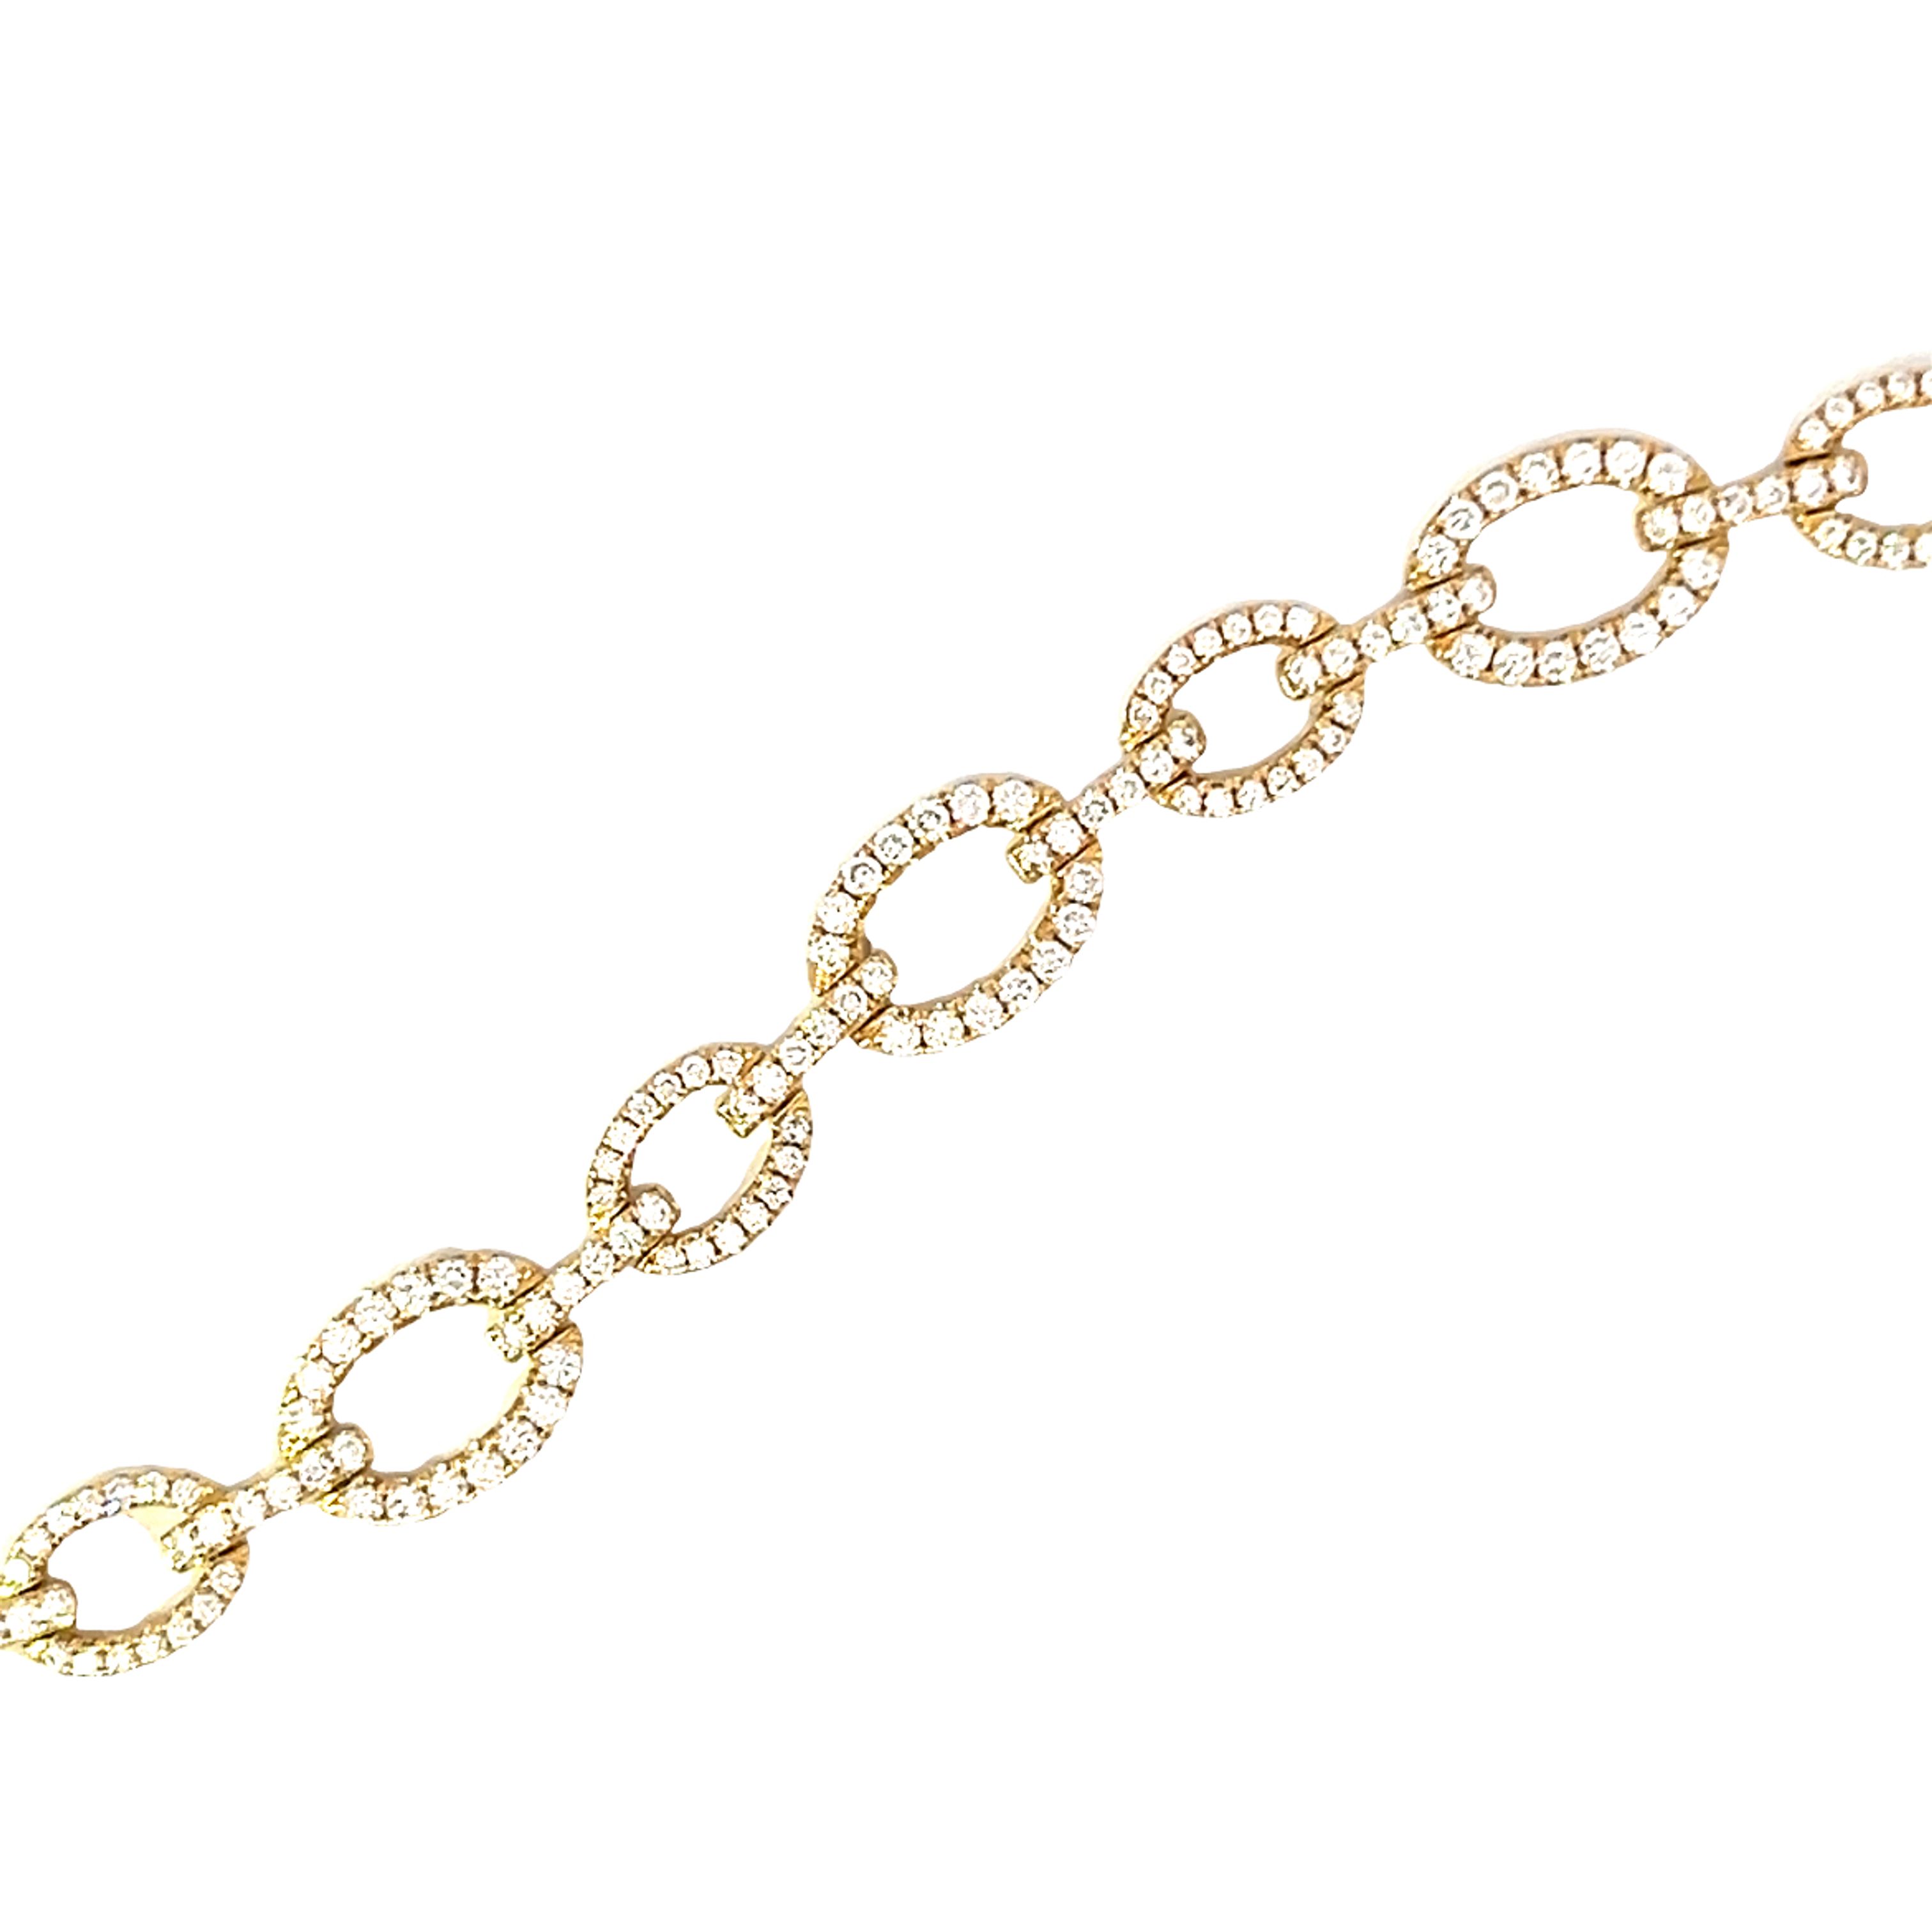 18 Carat Yellow Gold Diamond Bracelet  - 2.44 Carats